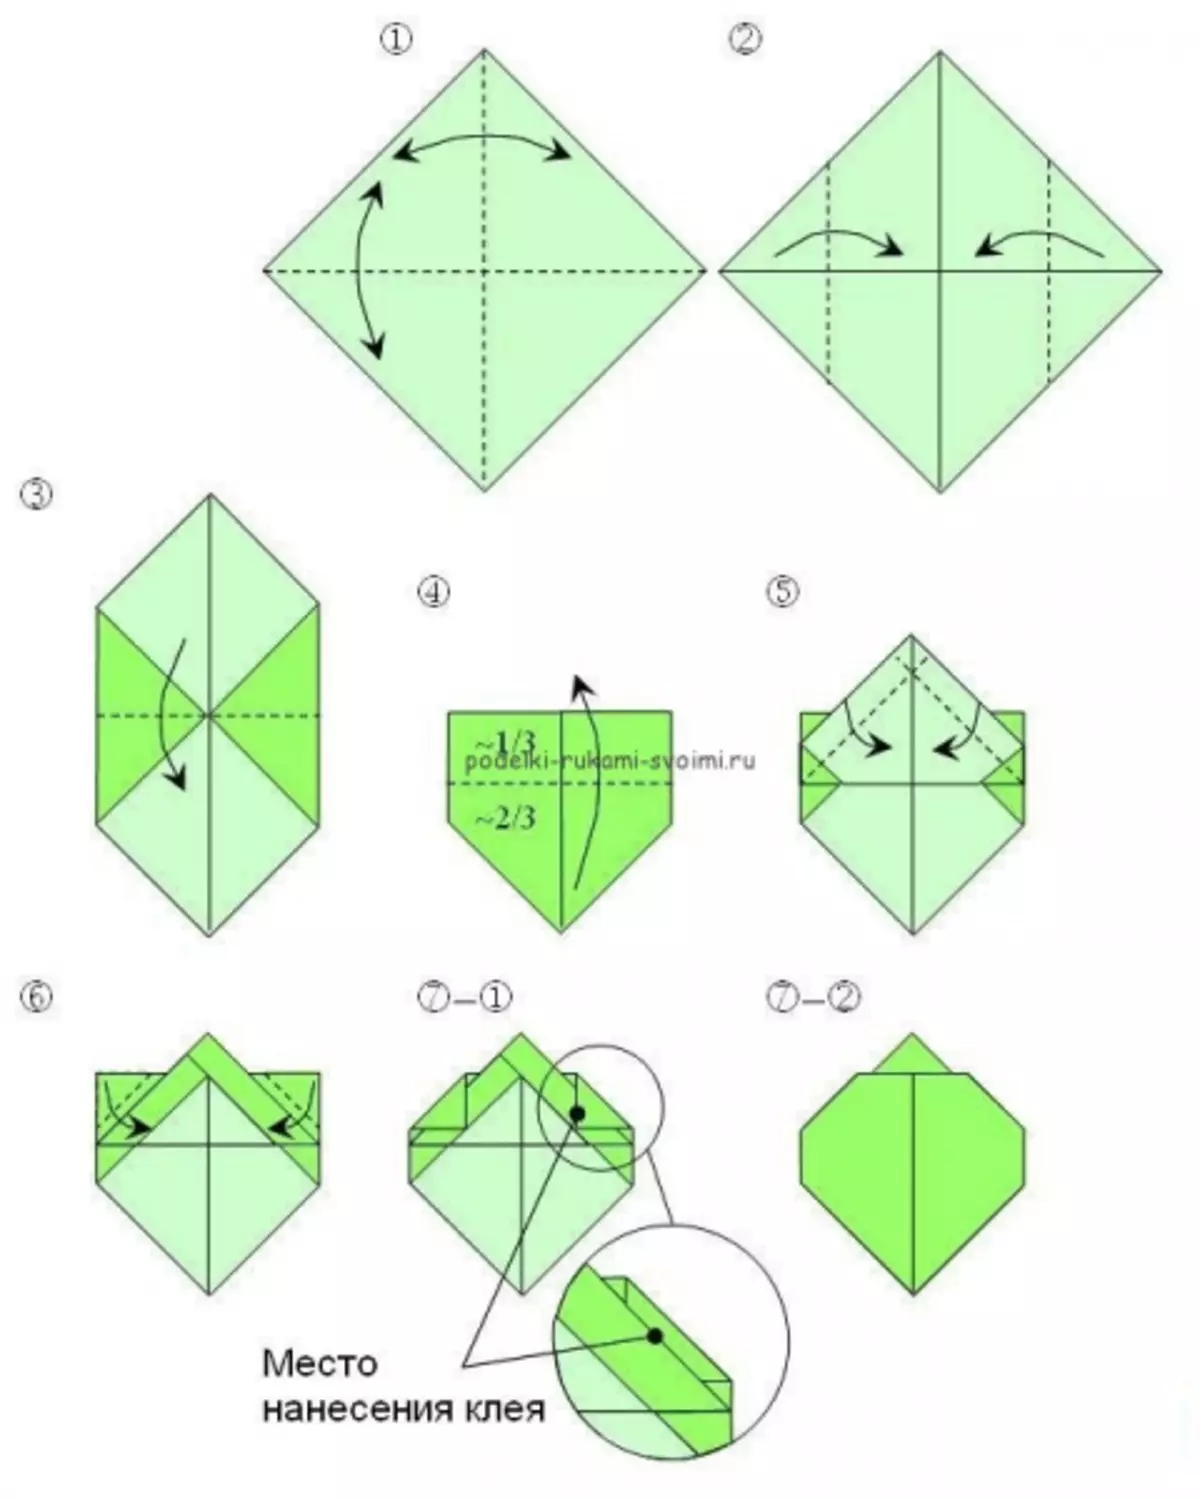 Origami fir Kanner mat Schemaen: Masterklassen mat Fotoen a Videoen